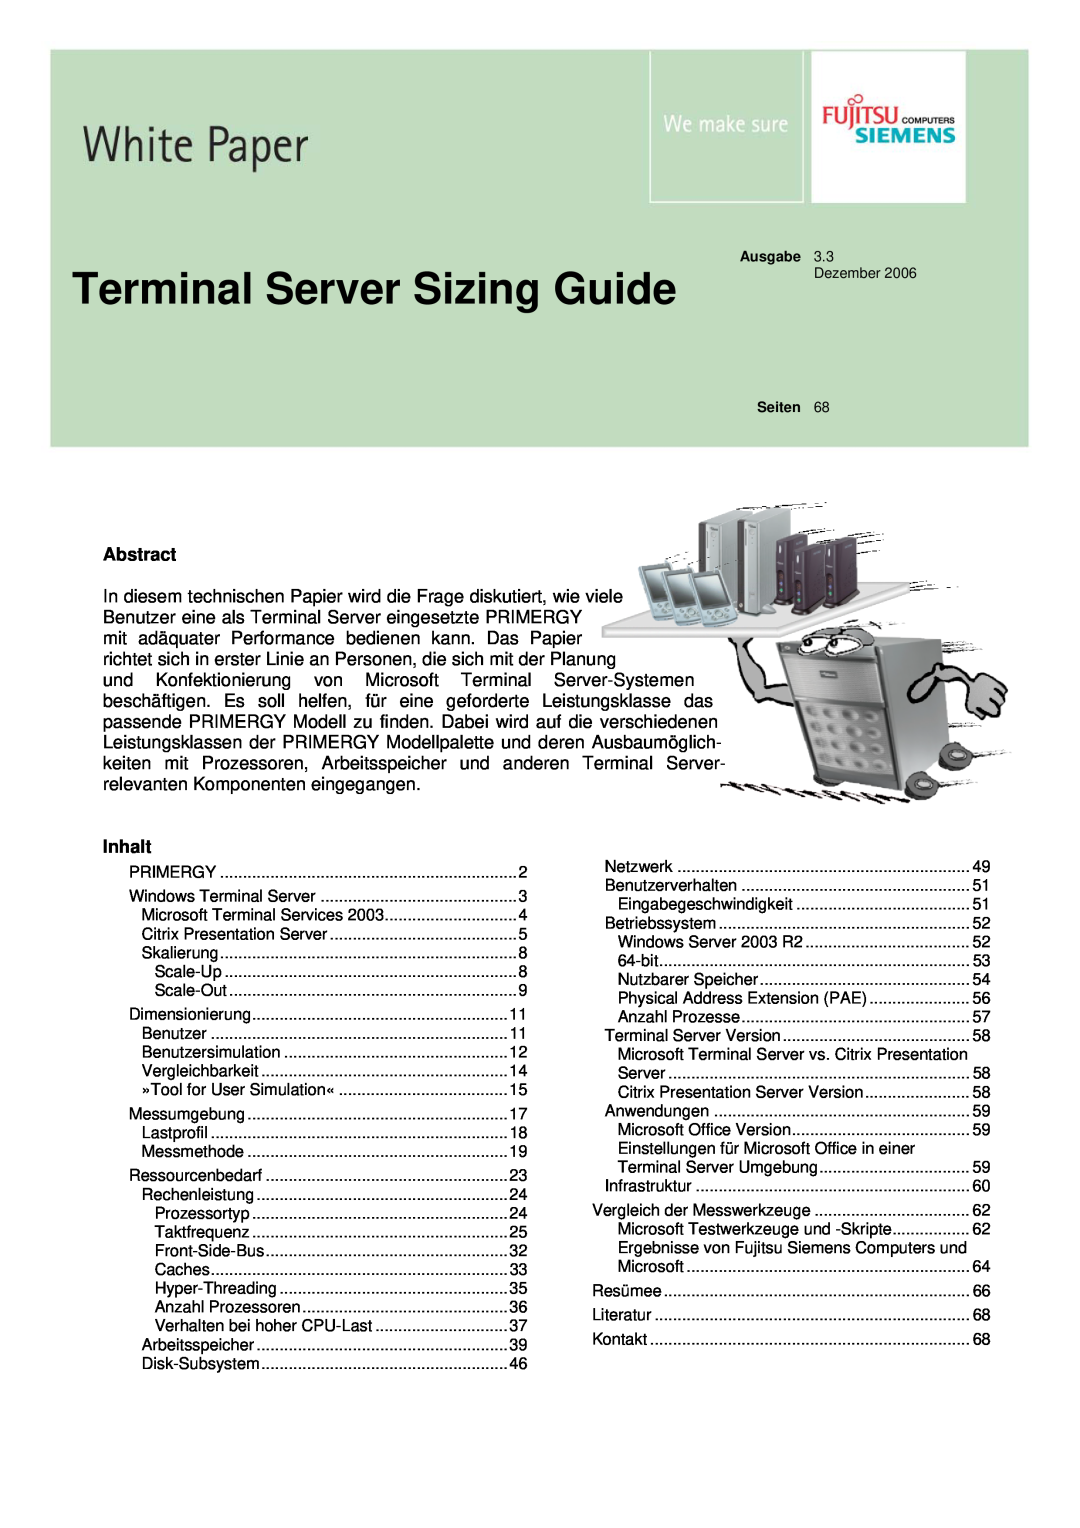 Fujitsu 68 manual Abstract, Terminal Server Sizing Guide 